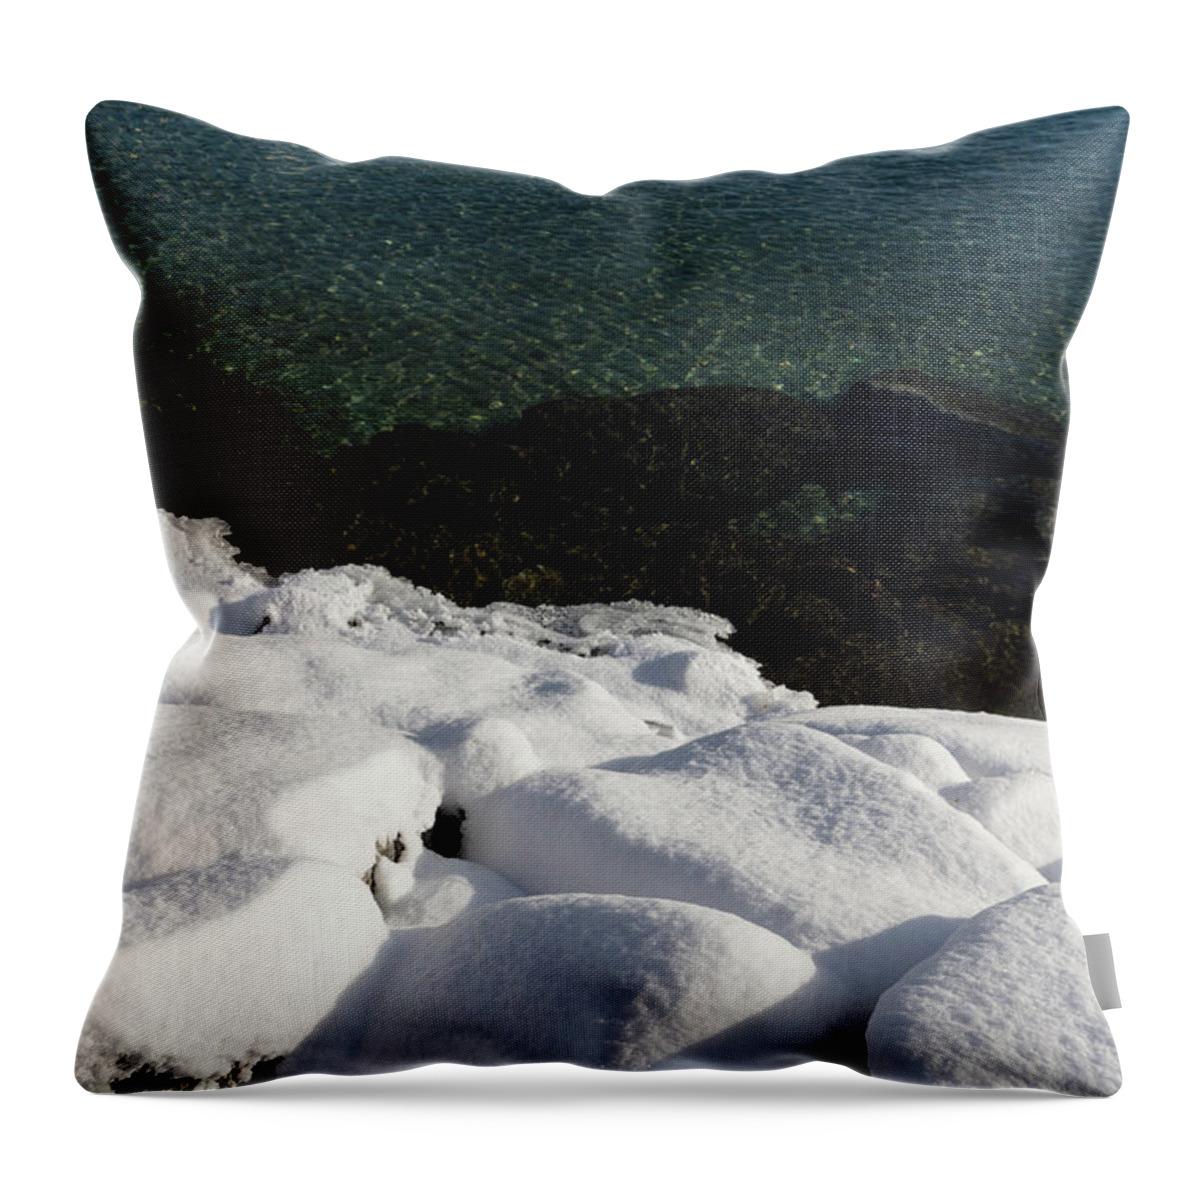 Georgia Mizuleva Throw Pillow featuring the photograph Sunny Winter Layers on the Lake by Georgia Mizuleva